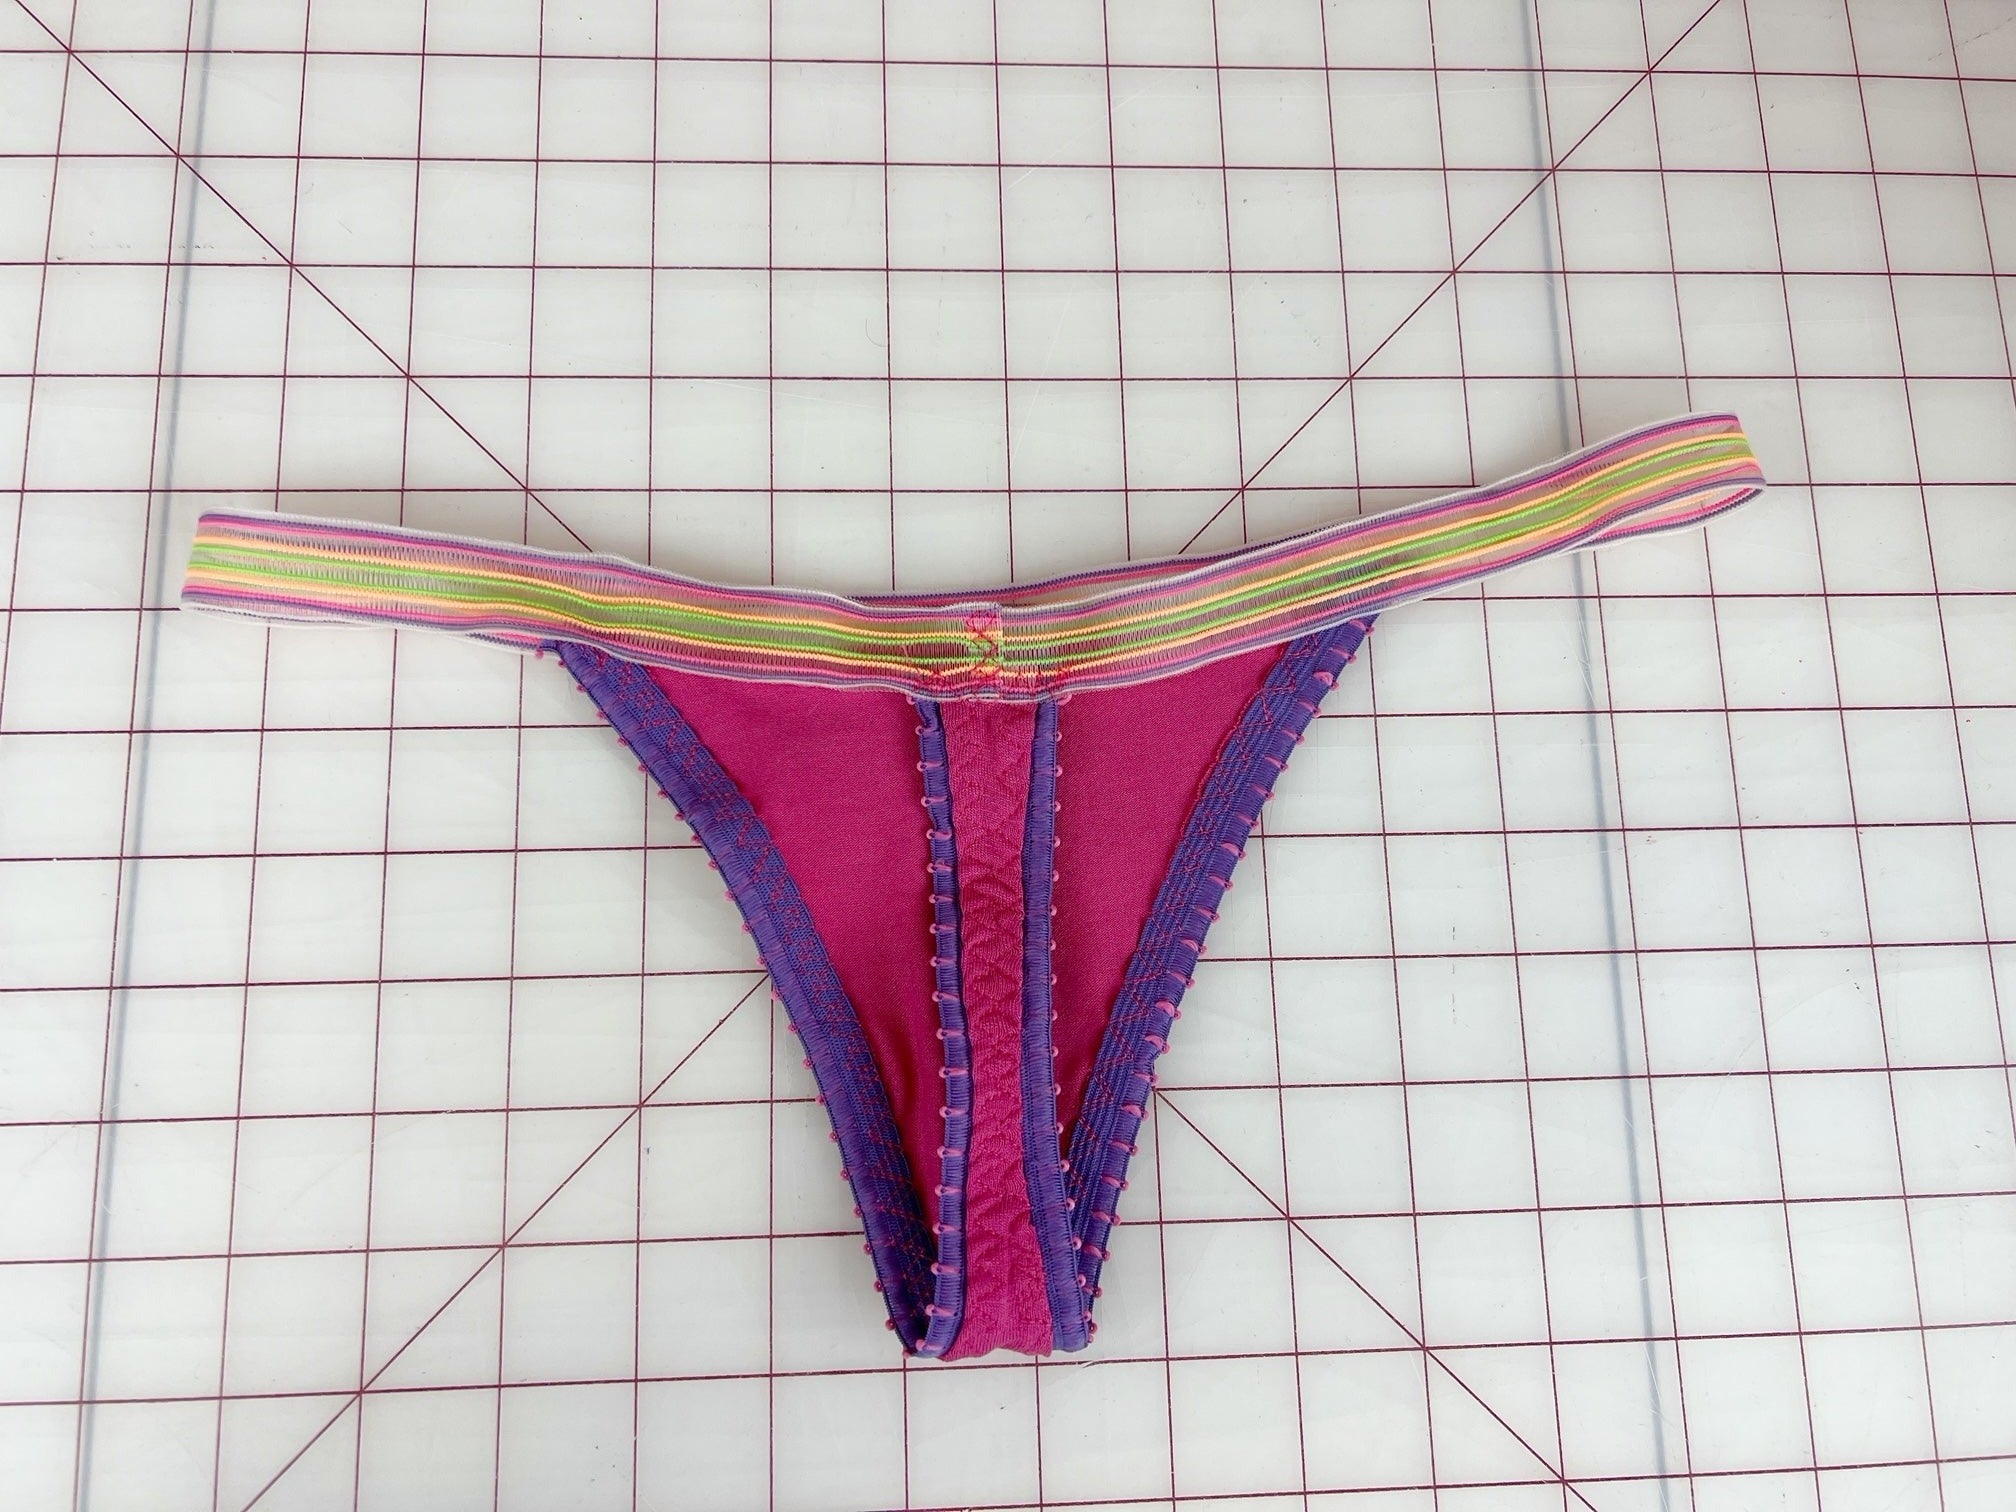 How to make elastic free thong, Lotus panties - View C - PDF sewing  pattern